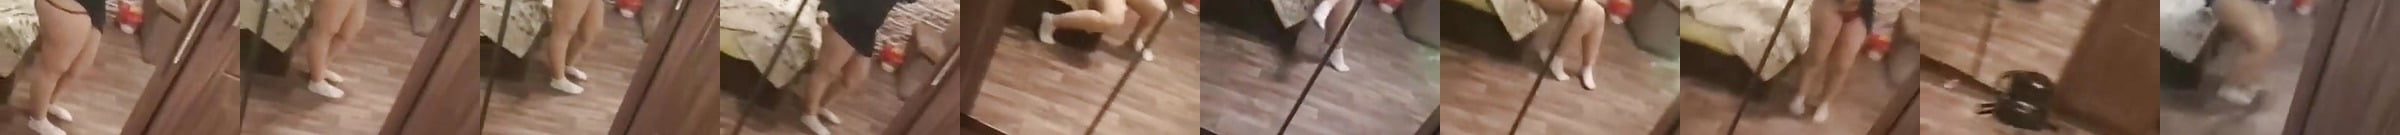 Dance1 Bbw Ass Arab Shared Wifes Ass Porn Video XHamster XHamster